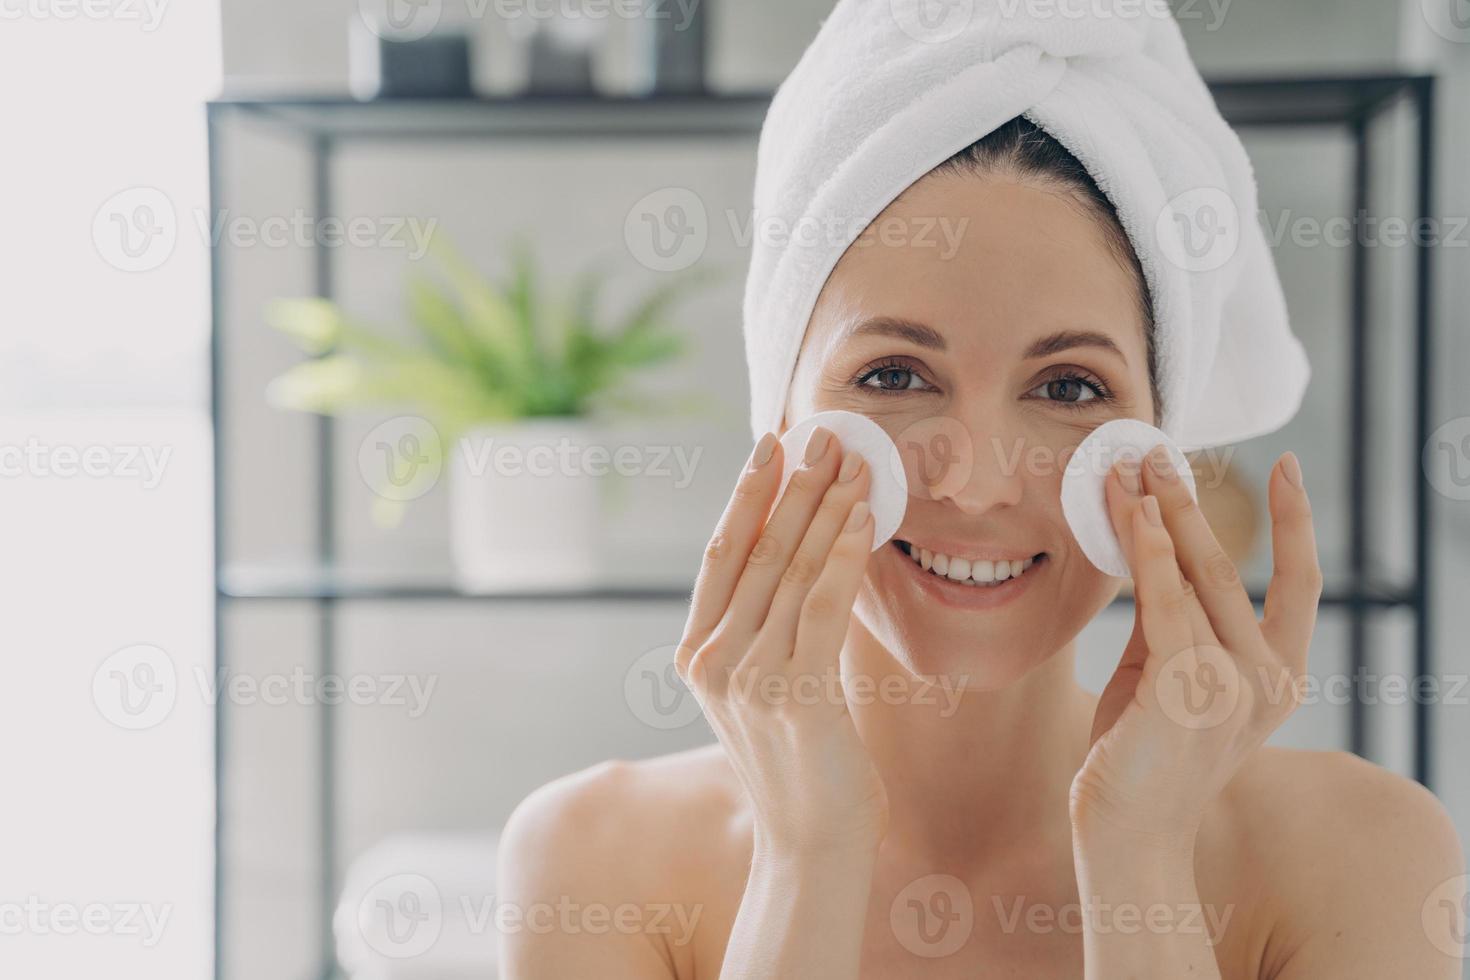 la chica está limpiando la piel con tóner facial y discos de algodón. joven atractiva después del baño. foto